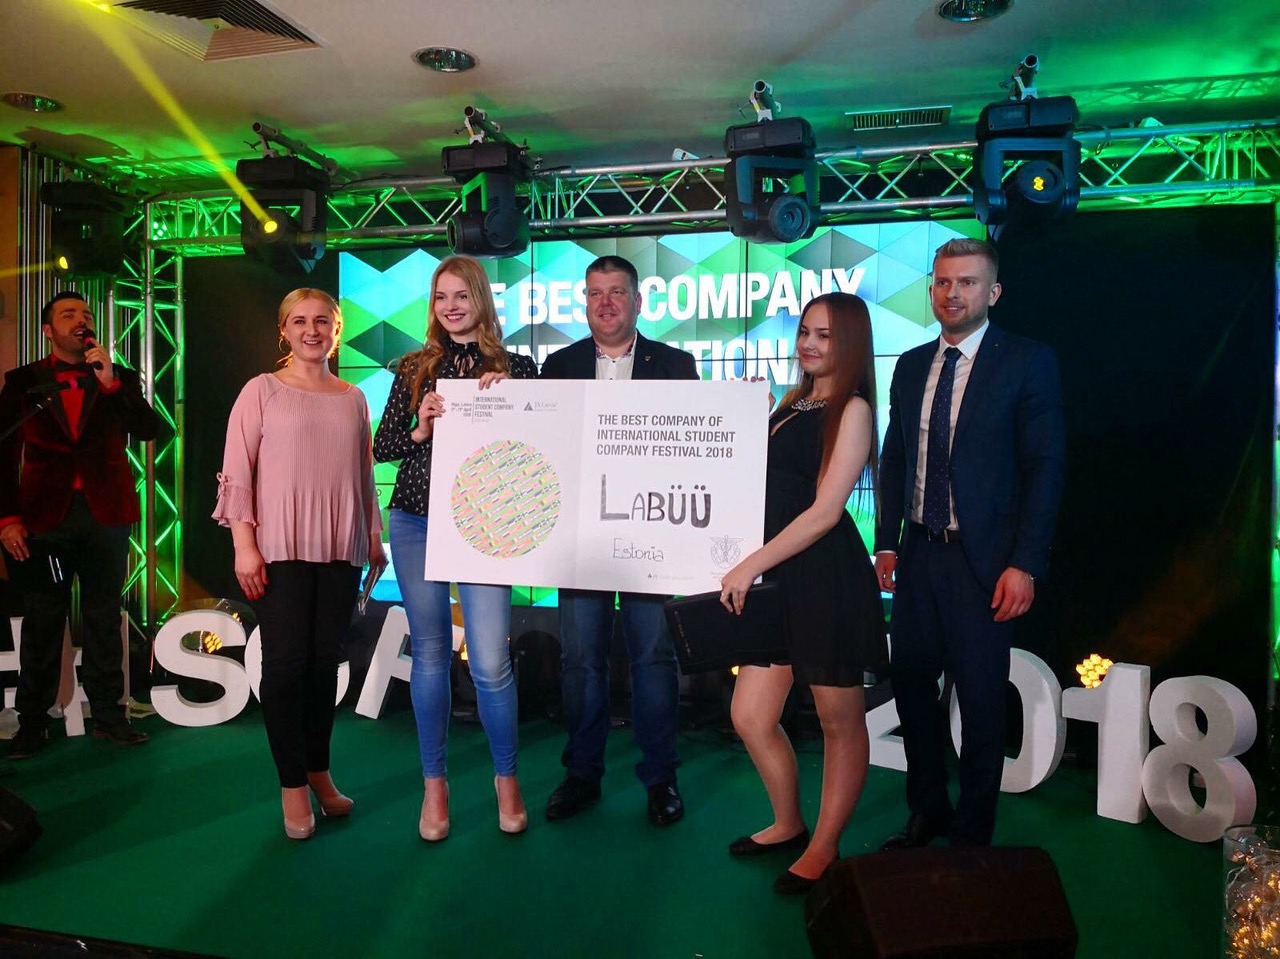 TUNNUSTUS! Eesti õpilasfirma pälvis rahvusvahelise õpilasfirmade festivali kõrgeima auhinna